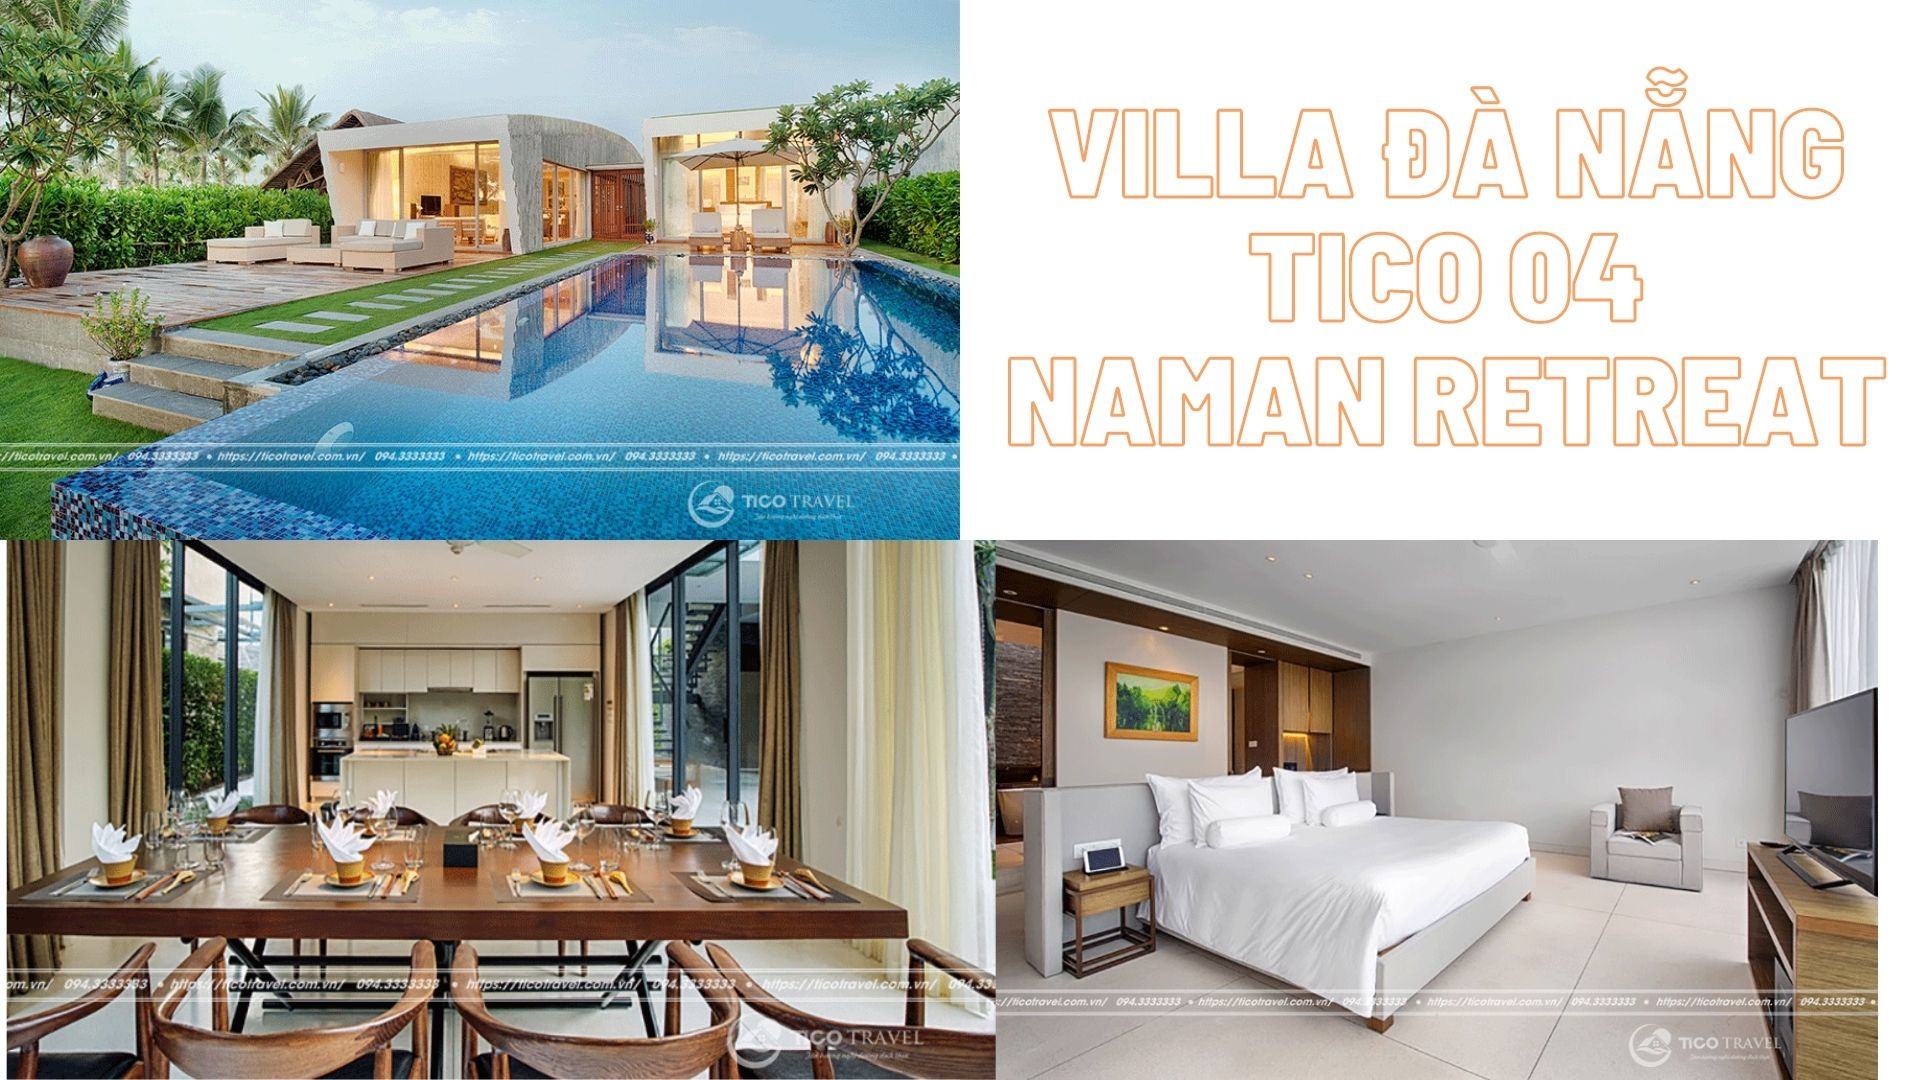 Villa Đà Nẵng Tico 04 - Naman Retreat